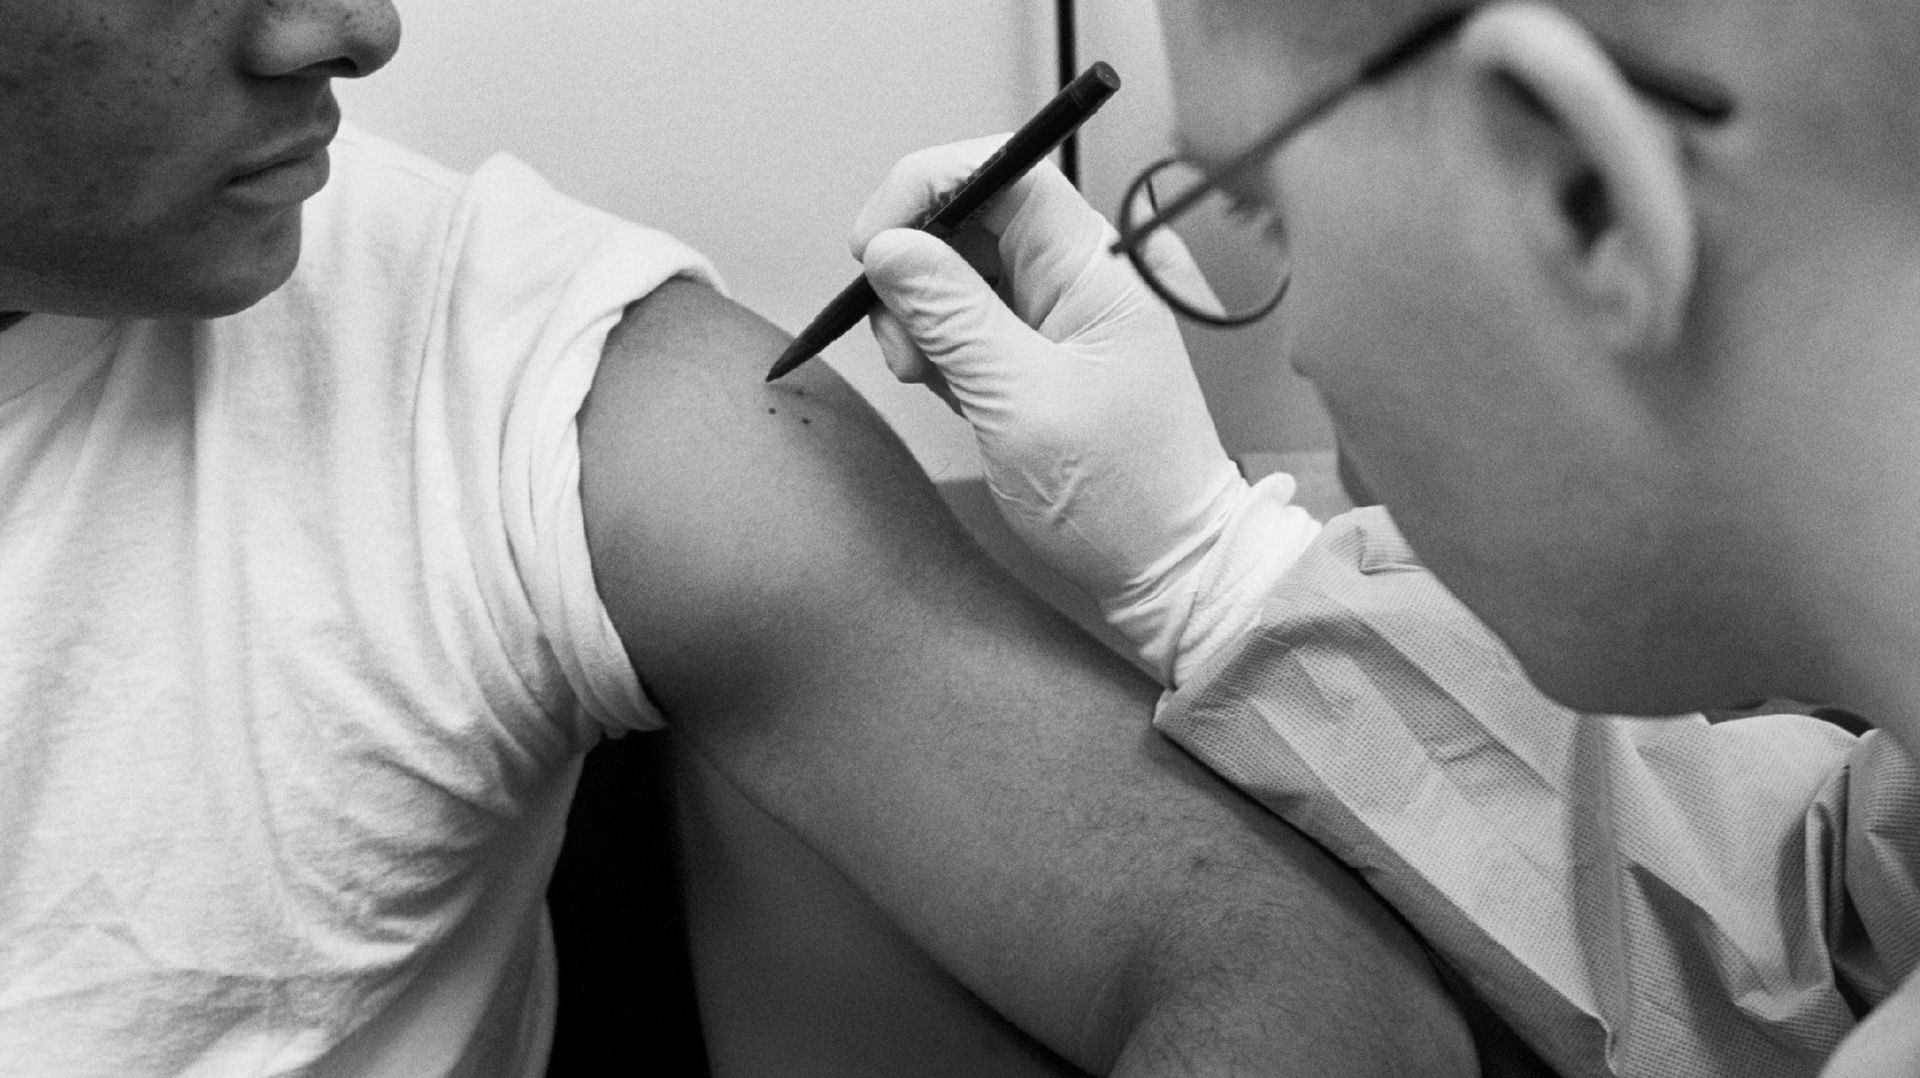 Un médecin marque l’endroit où il va administrer le vaccin antivariolique à un militaire au Walter Reed Army Medical Center, à Washington, DC. L’endroit est marqué afin que les médecins puissent surveiller de près la réaction de la peau au vaccin immédiat